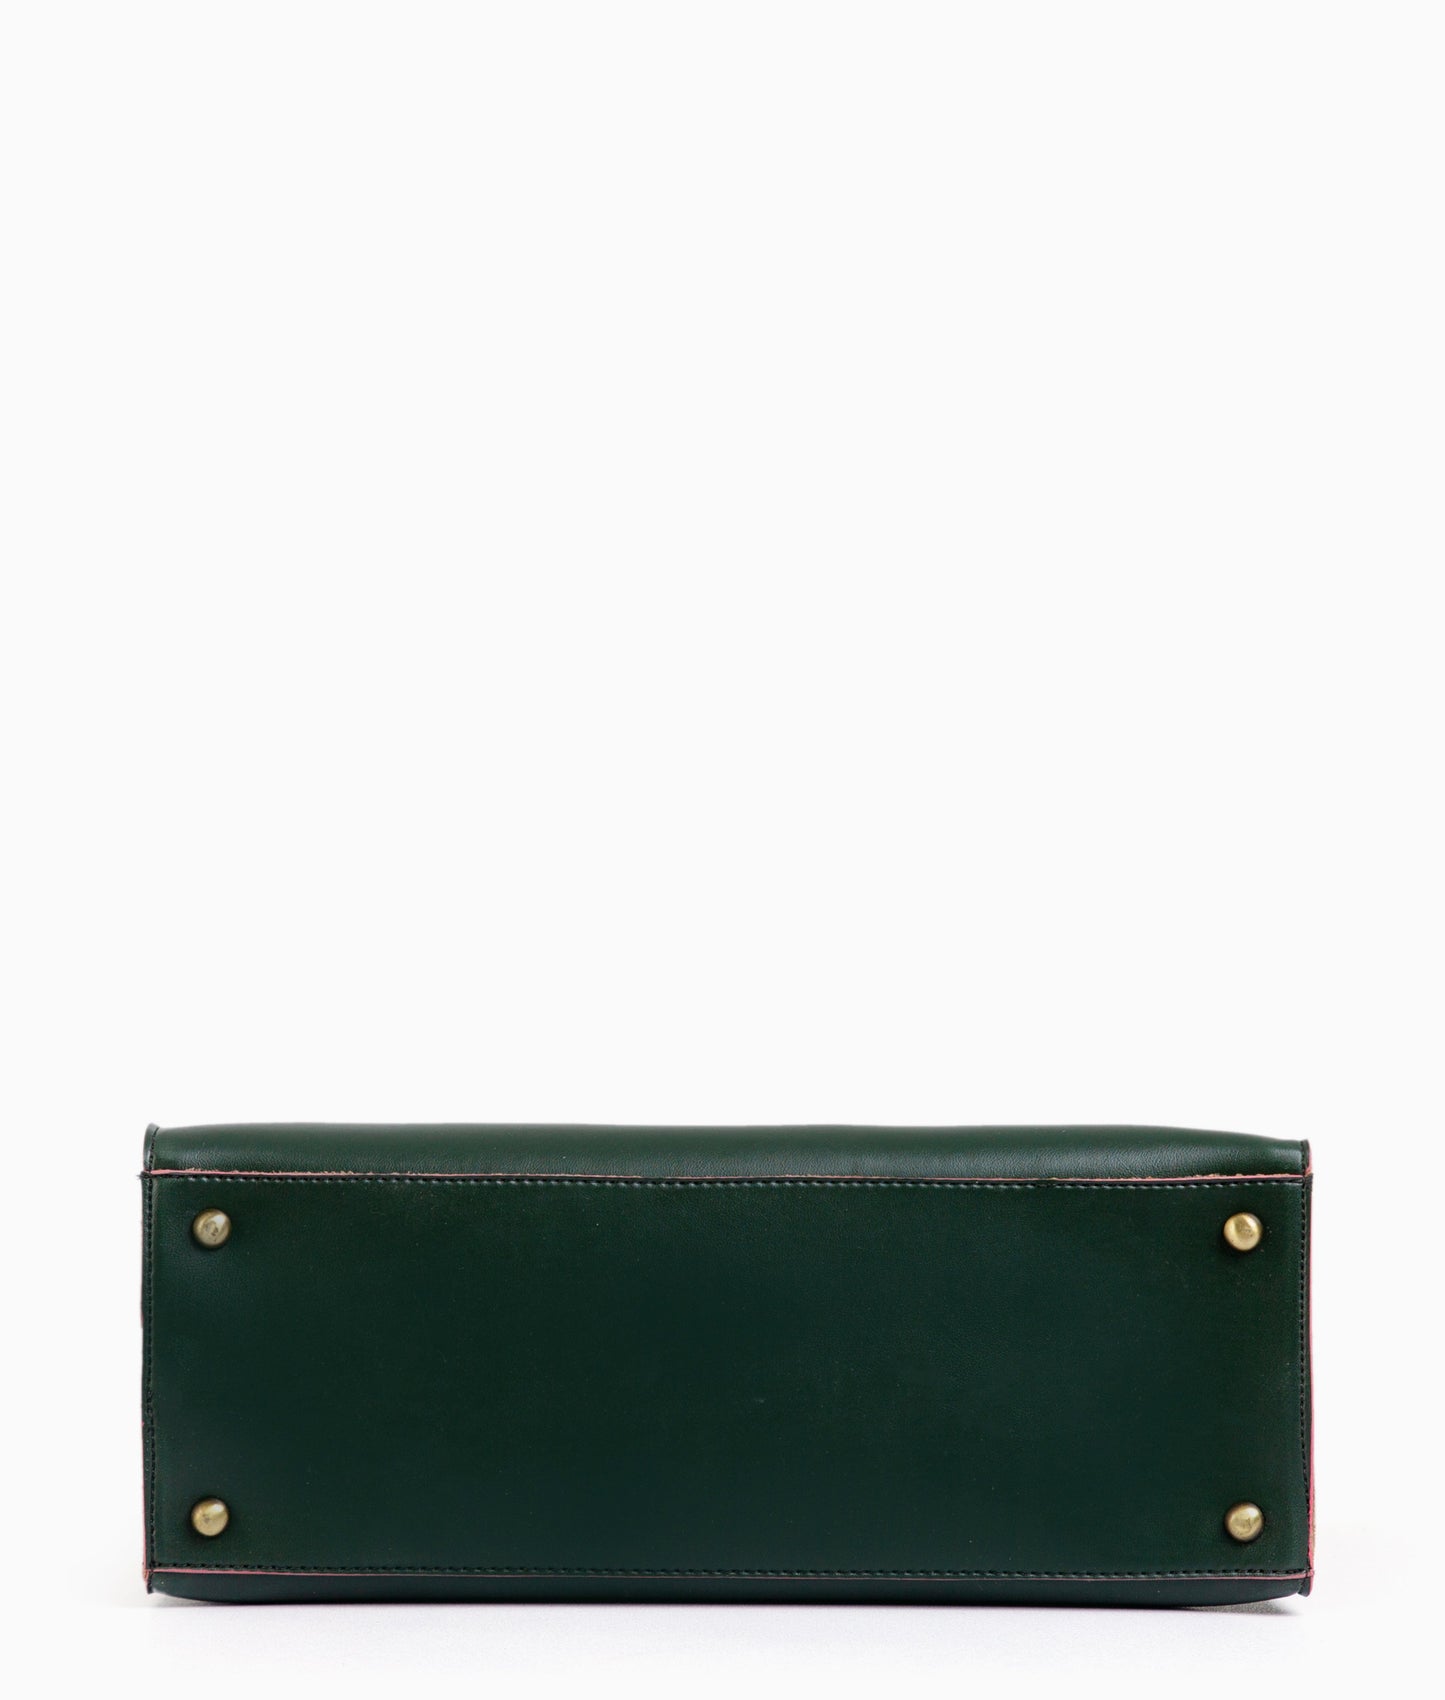 Green Handbag For Girls 599